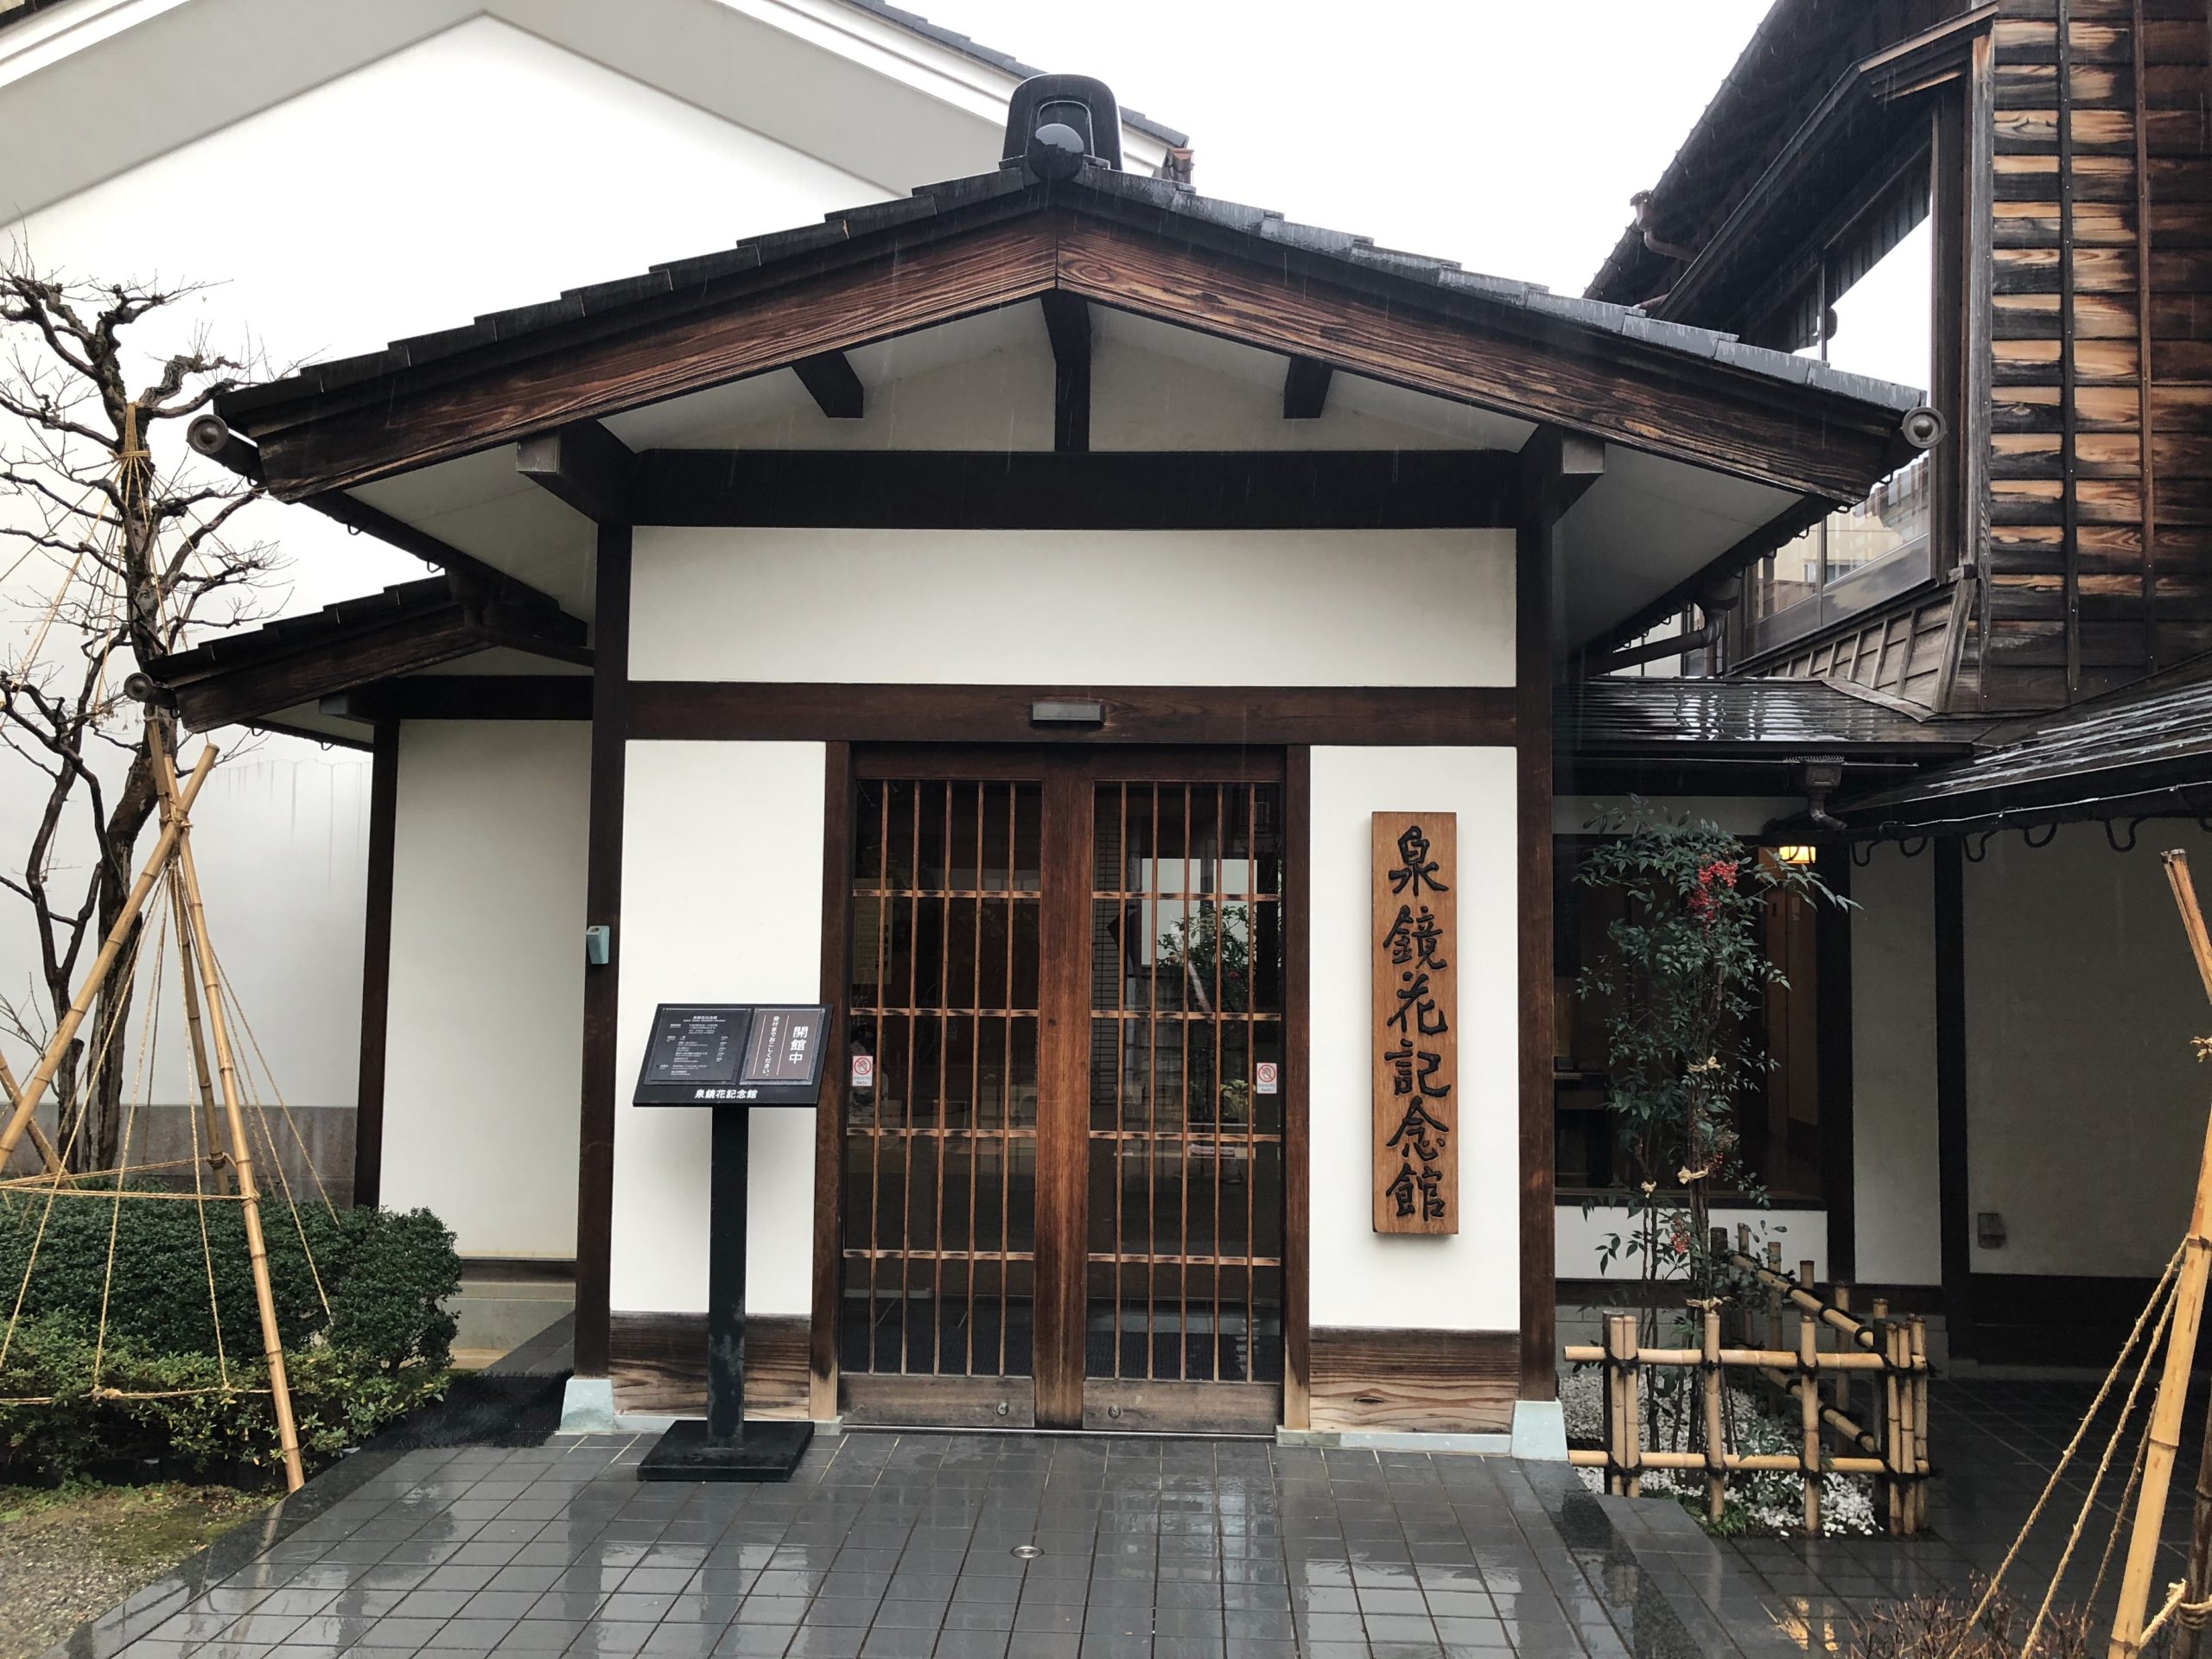 泉鏡花記念館 | 石川県金沢市の観光地 | 金沢インフォグラフィックス